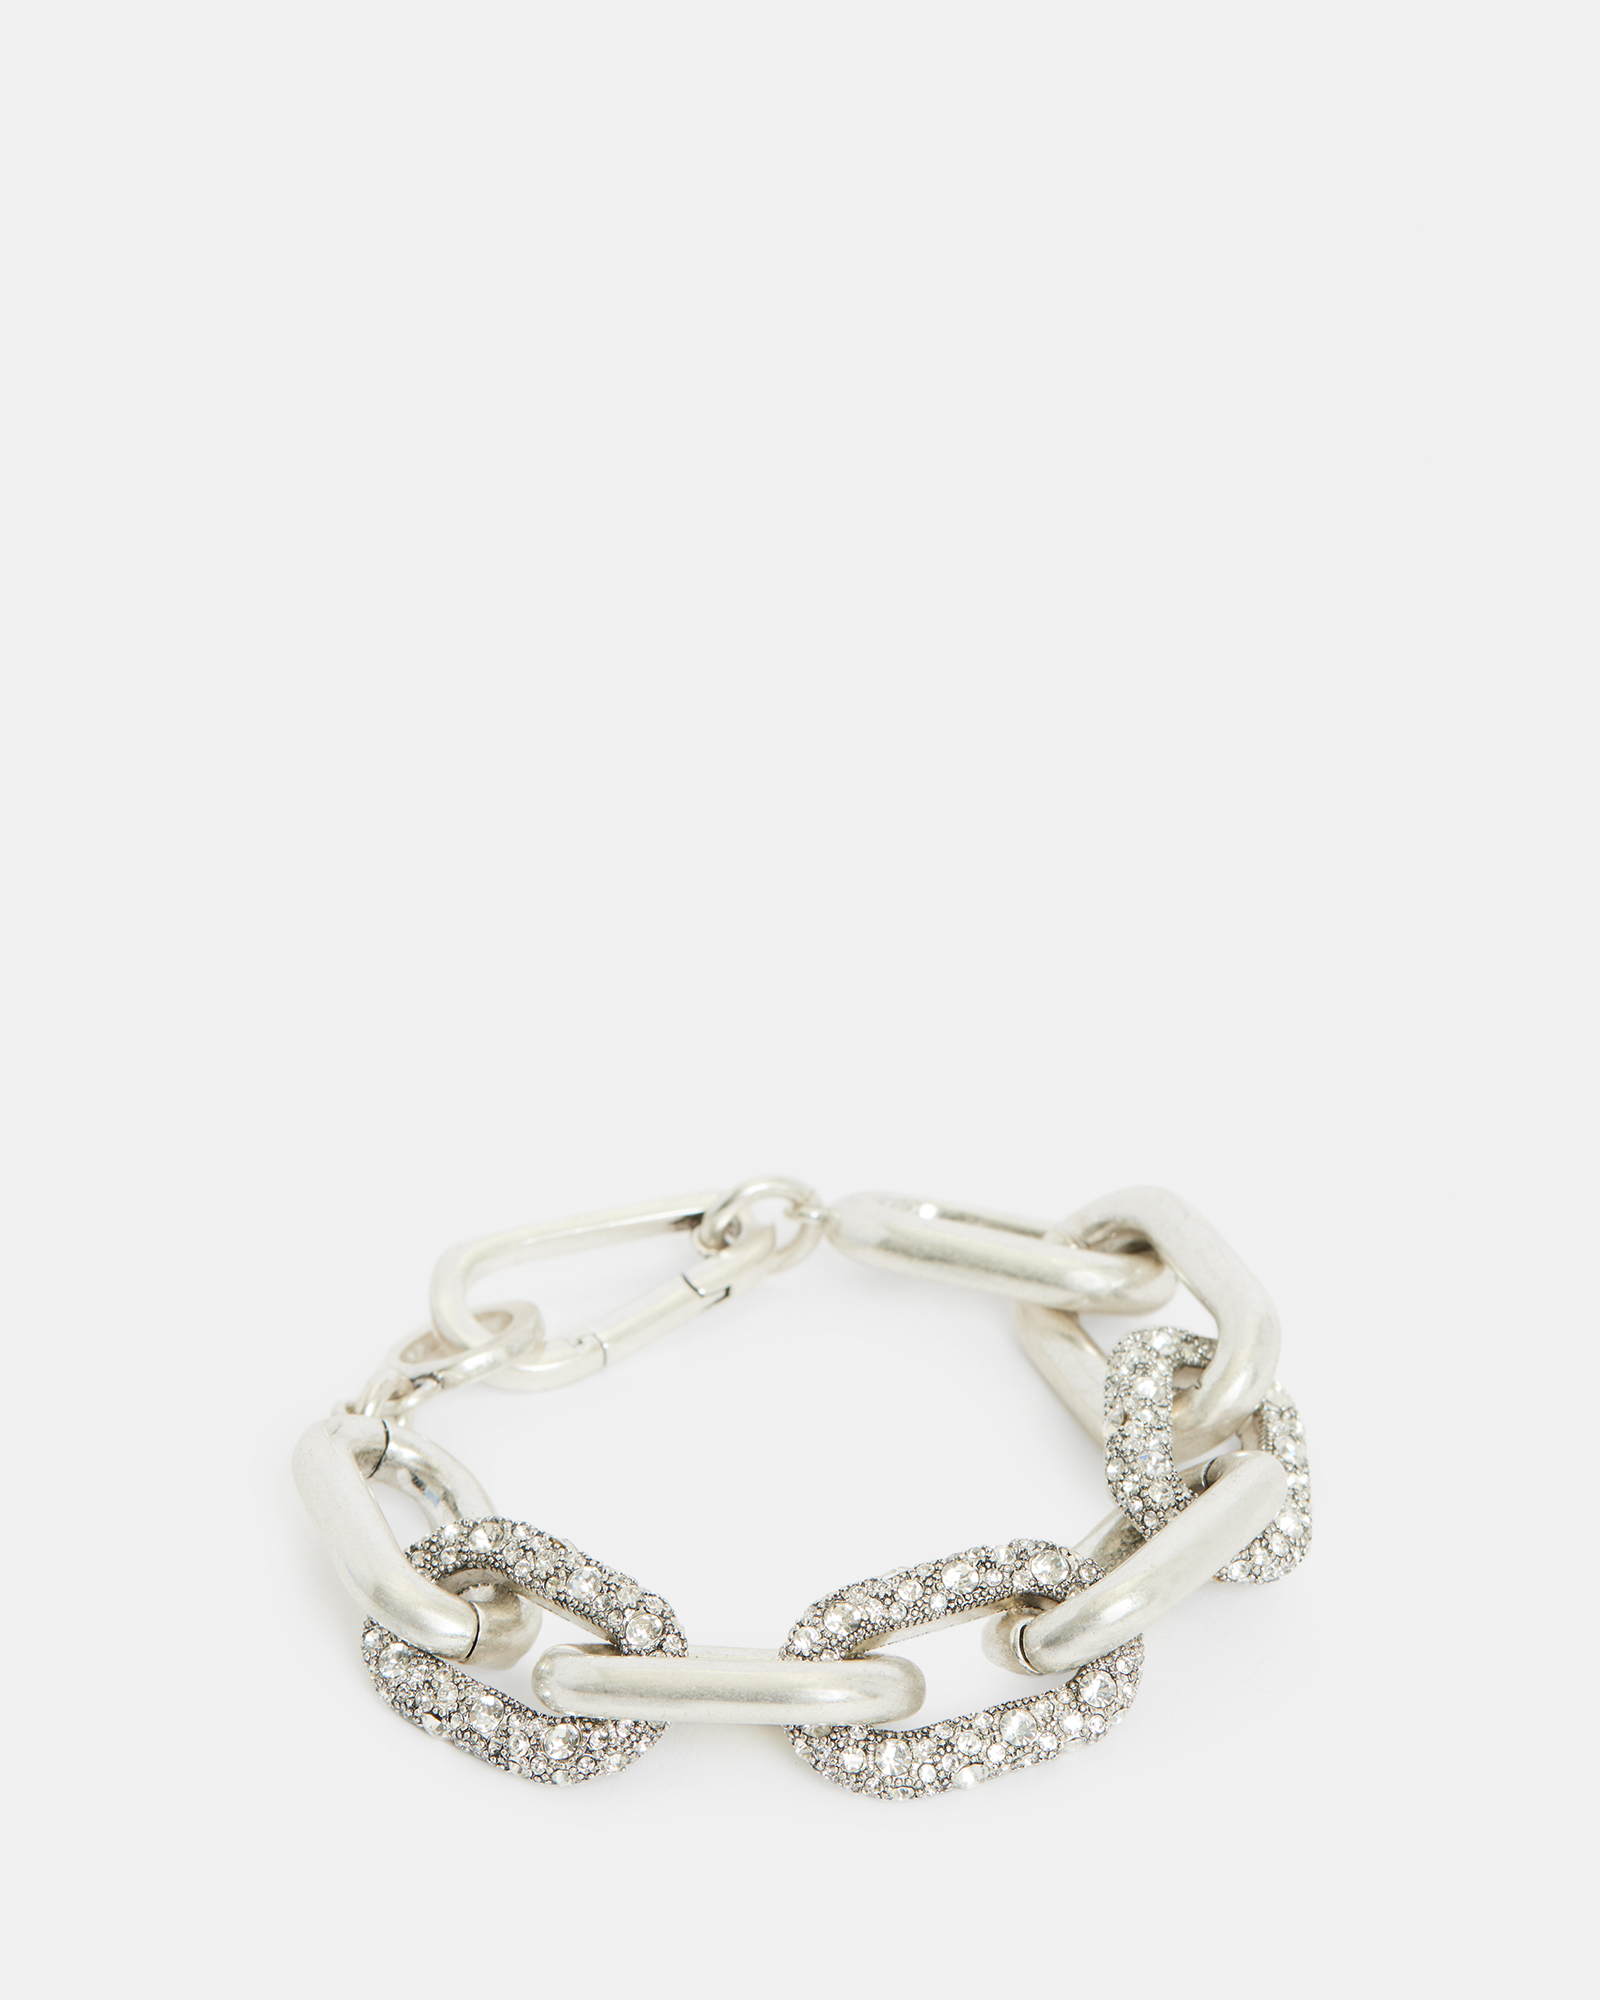 経典ブランド OH.glass bracelet silver925 ブレスレット - www